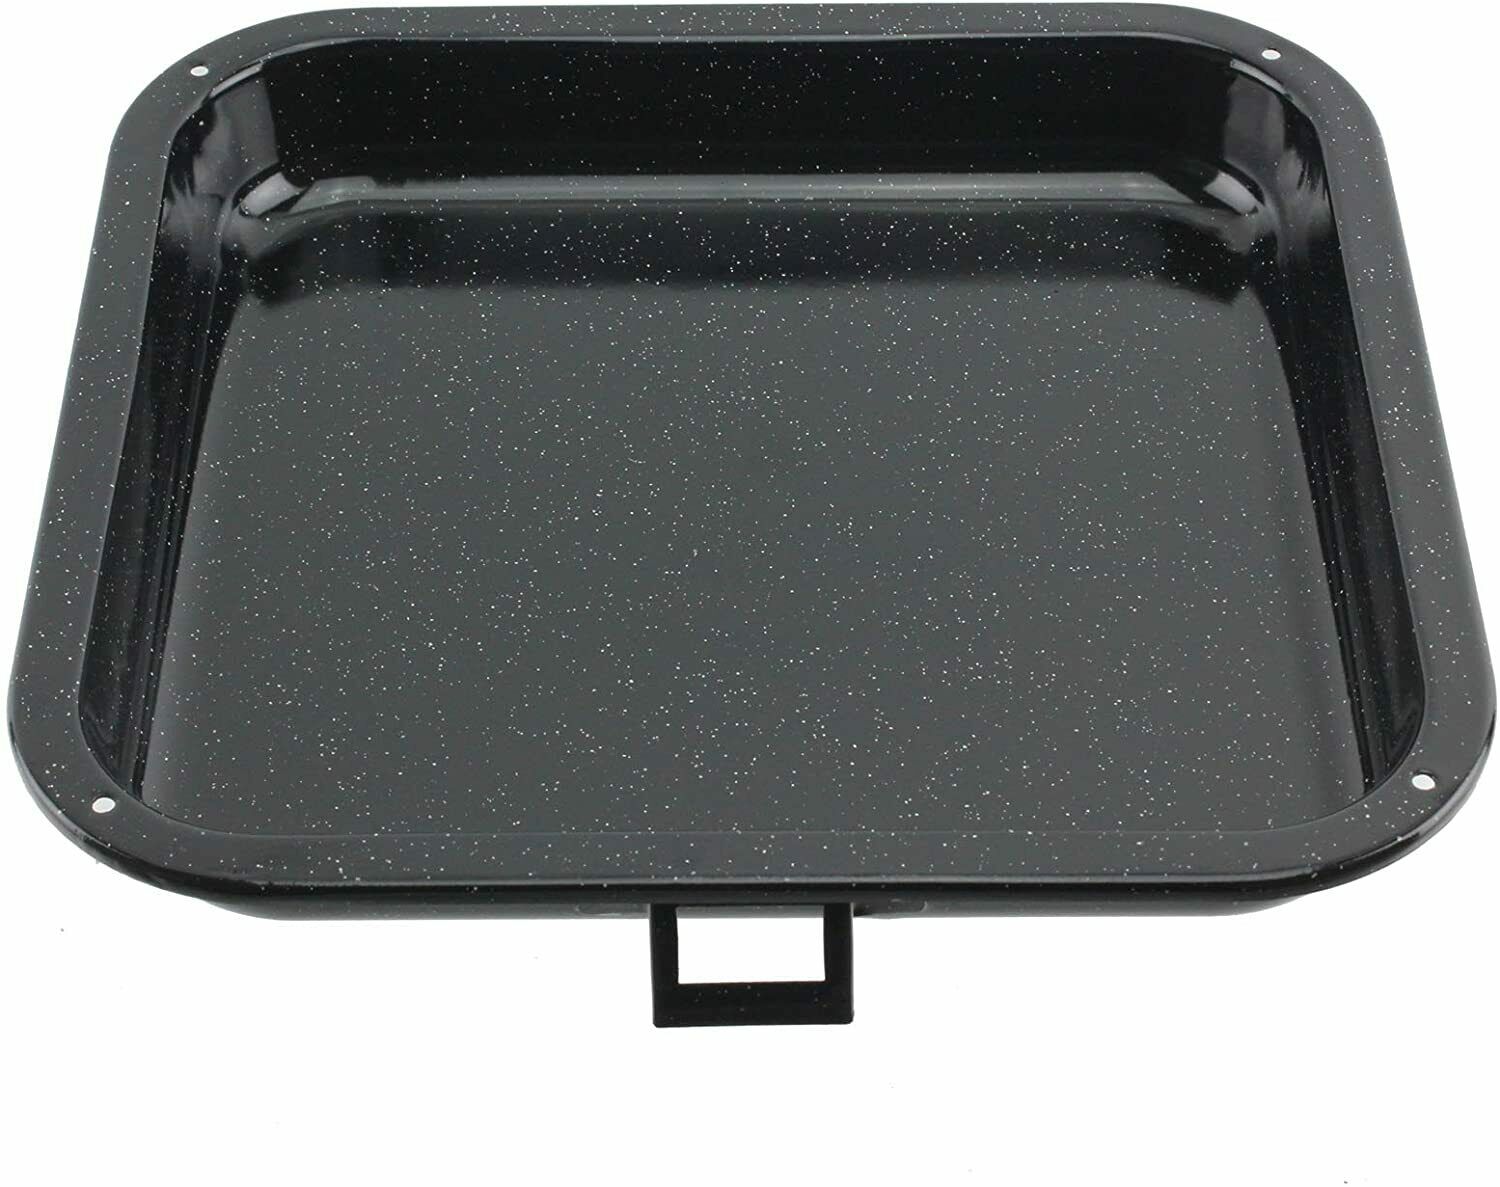 Black enameled finish grill pan